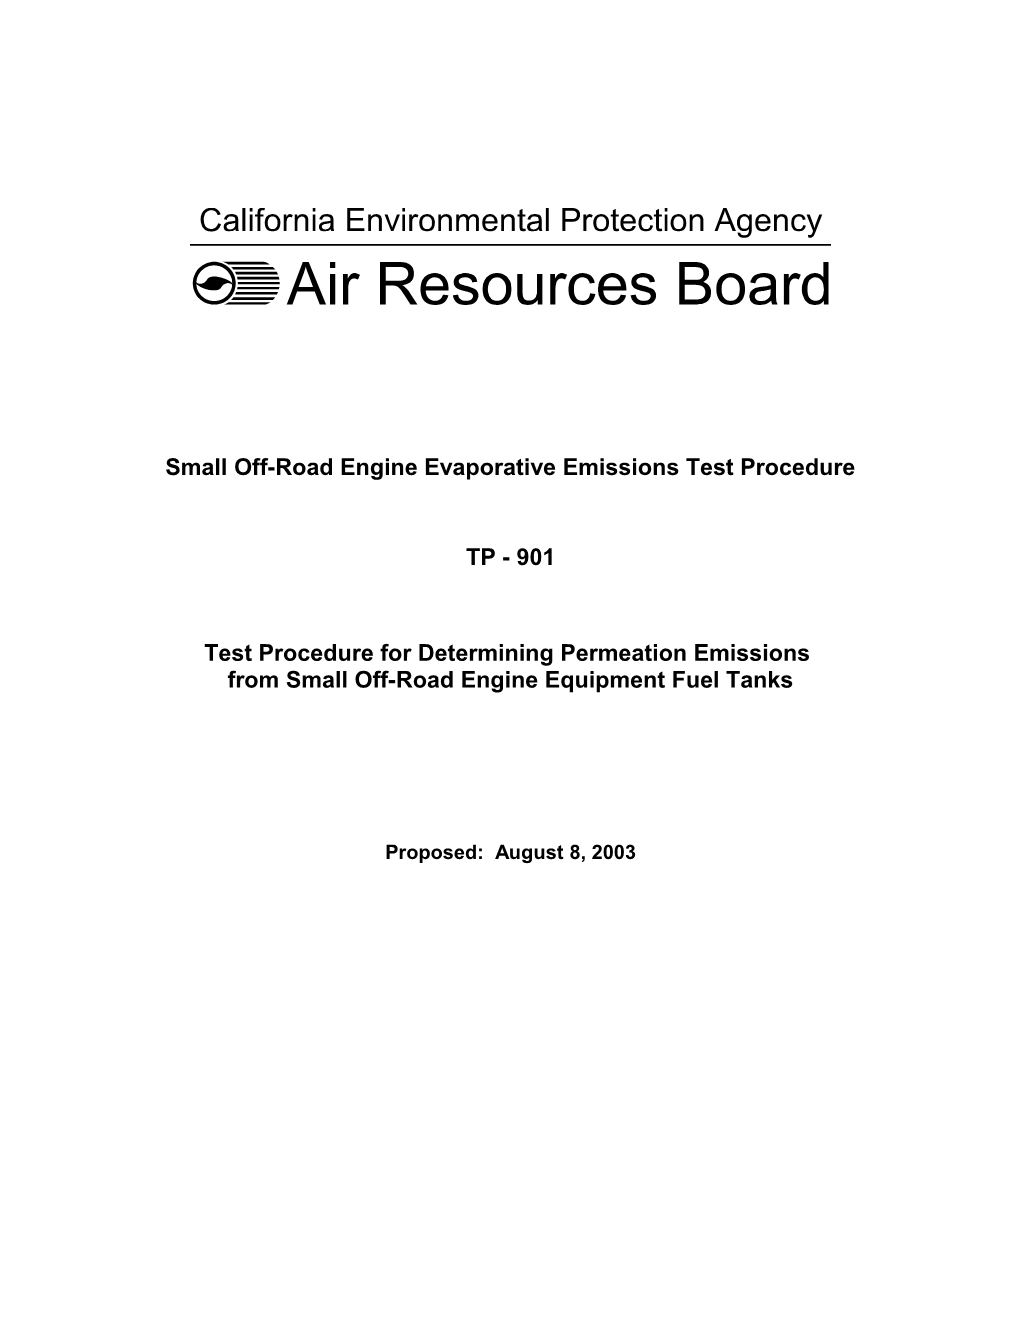 Rulemaking Informal: 2003-05-08 Draft Evaporative Emission Test Procedure TP-901